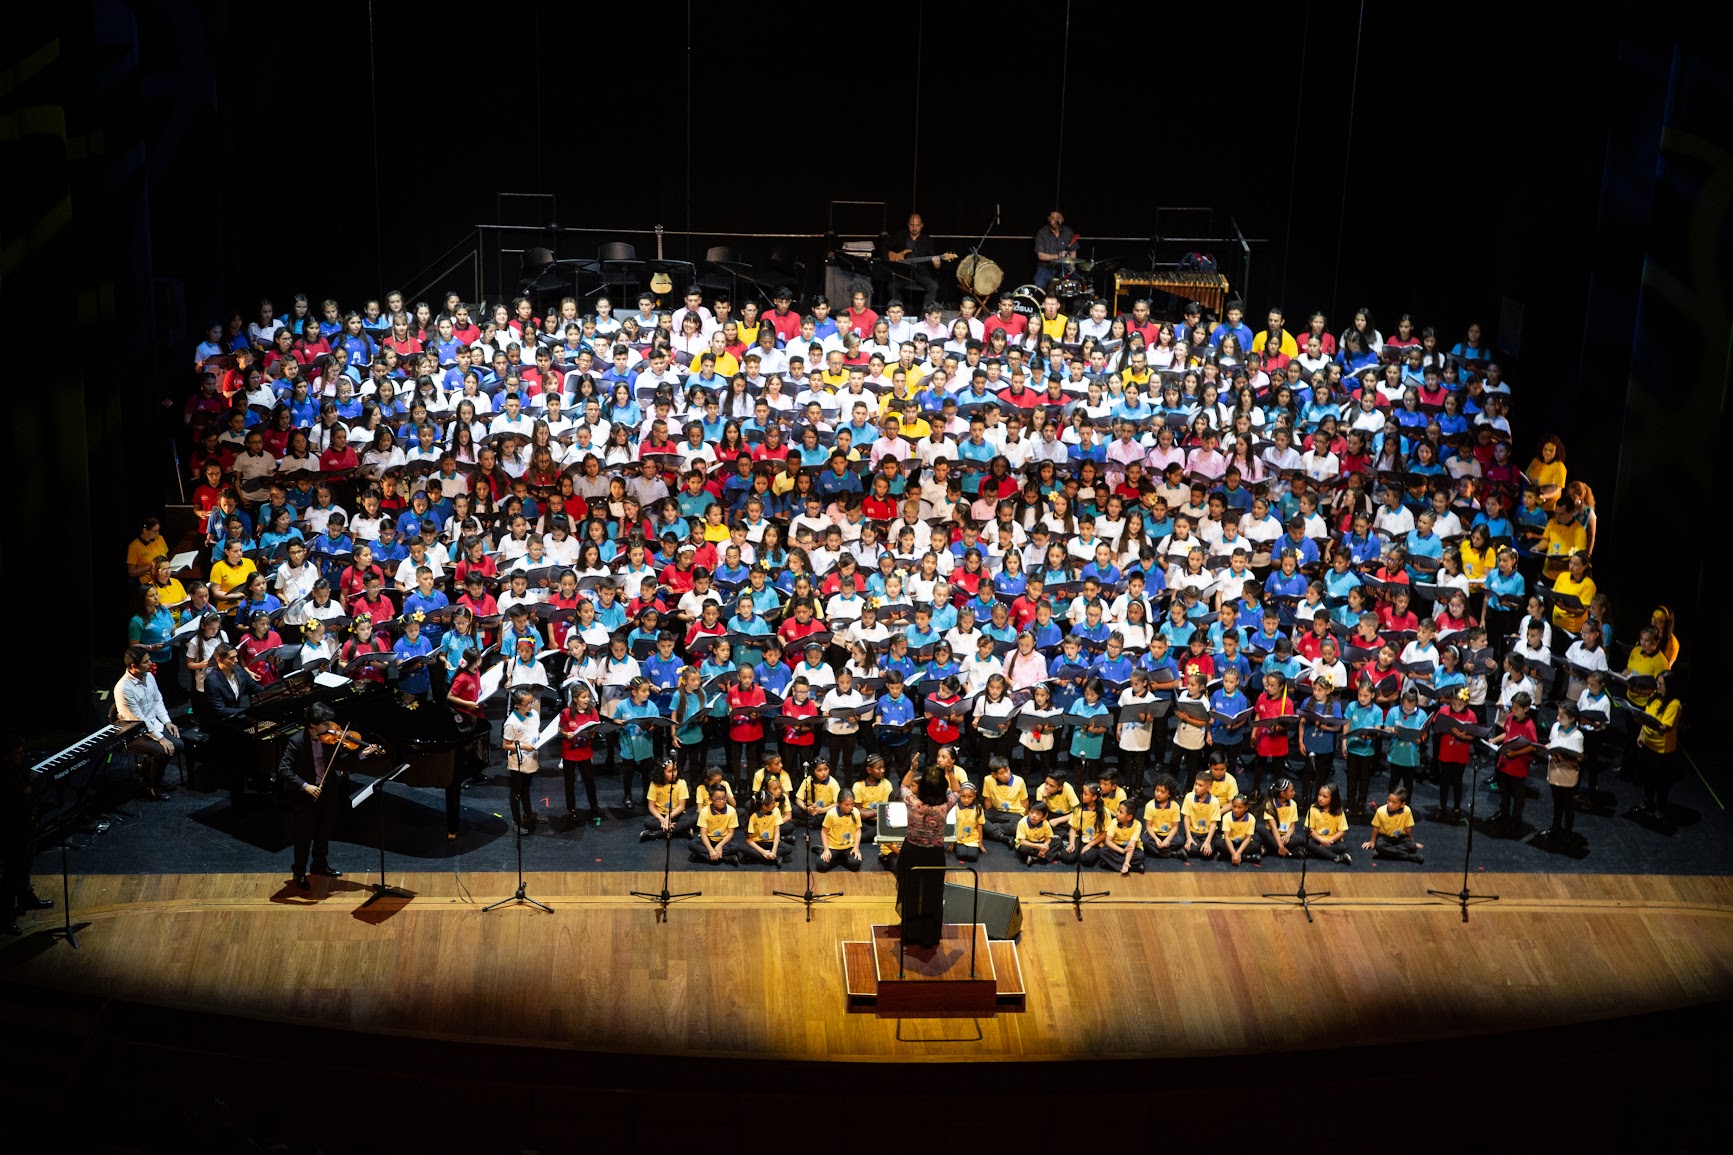 Arranca la fiesta de los 10 años de ‘Canta Bogotá Canta’ con el Tercer encuentro de coros escolares ‘Cantando mi historia’